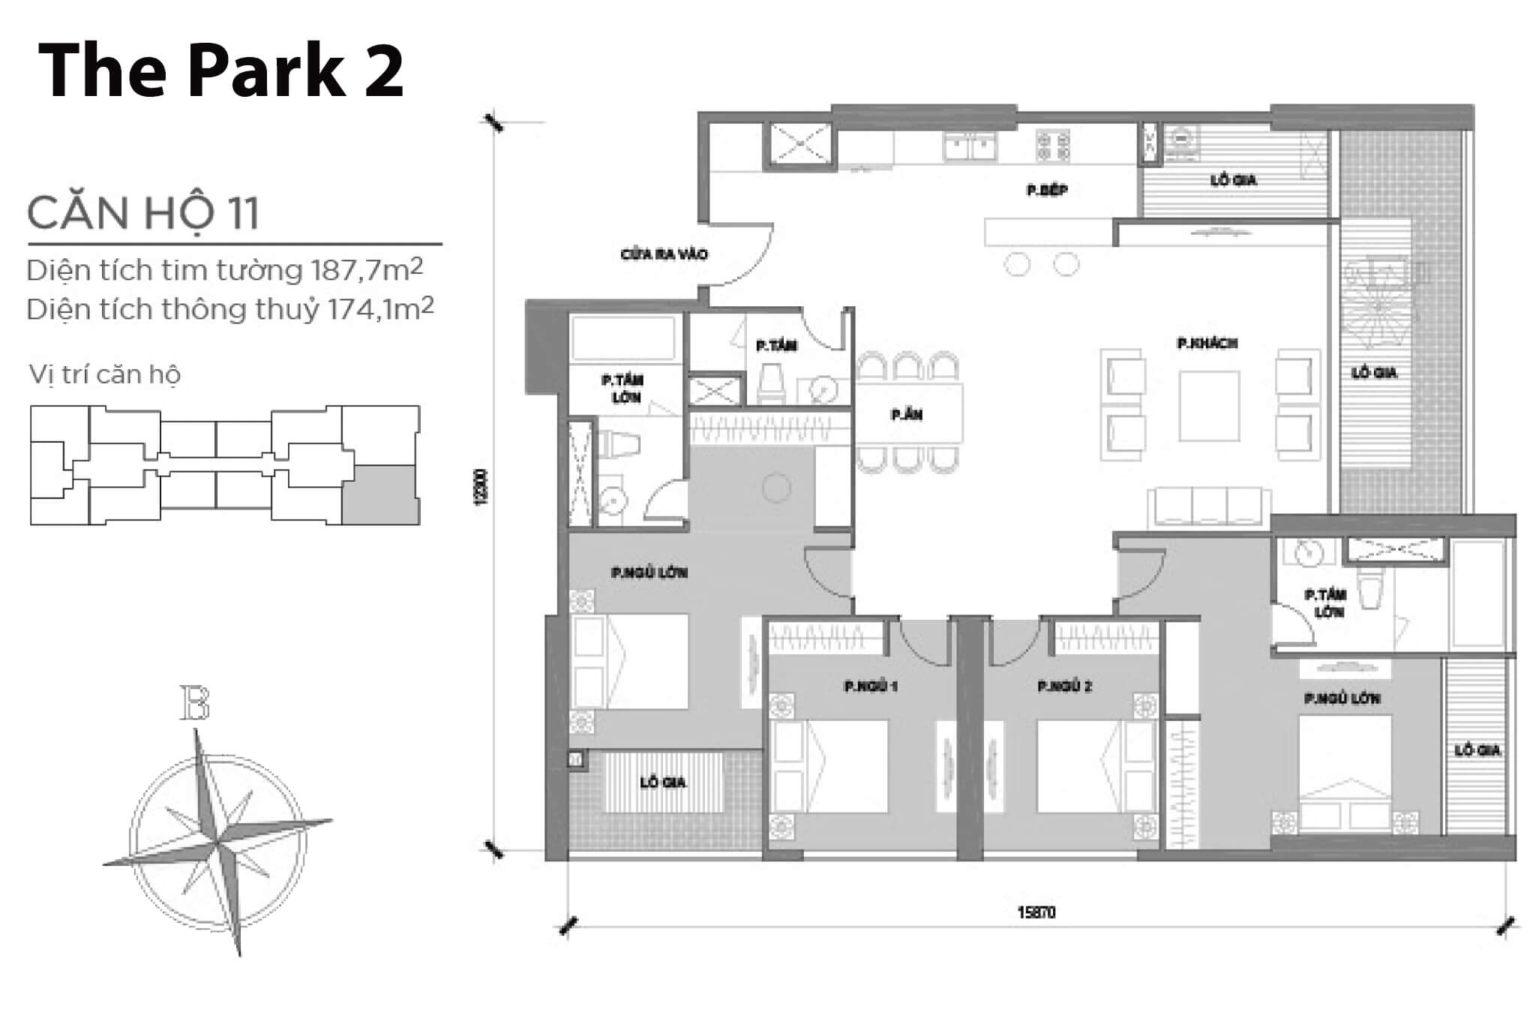 202301/02/09/171811-mat-bang-layout-park-2-can-ho-11-1536x1025.jpg